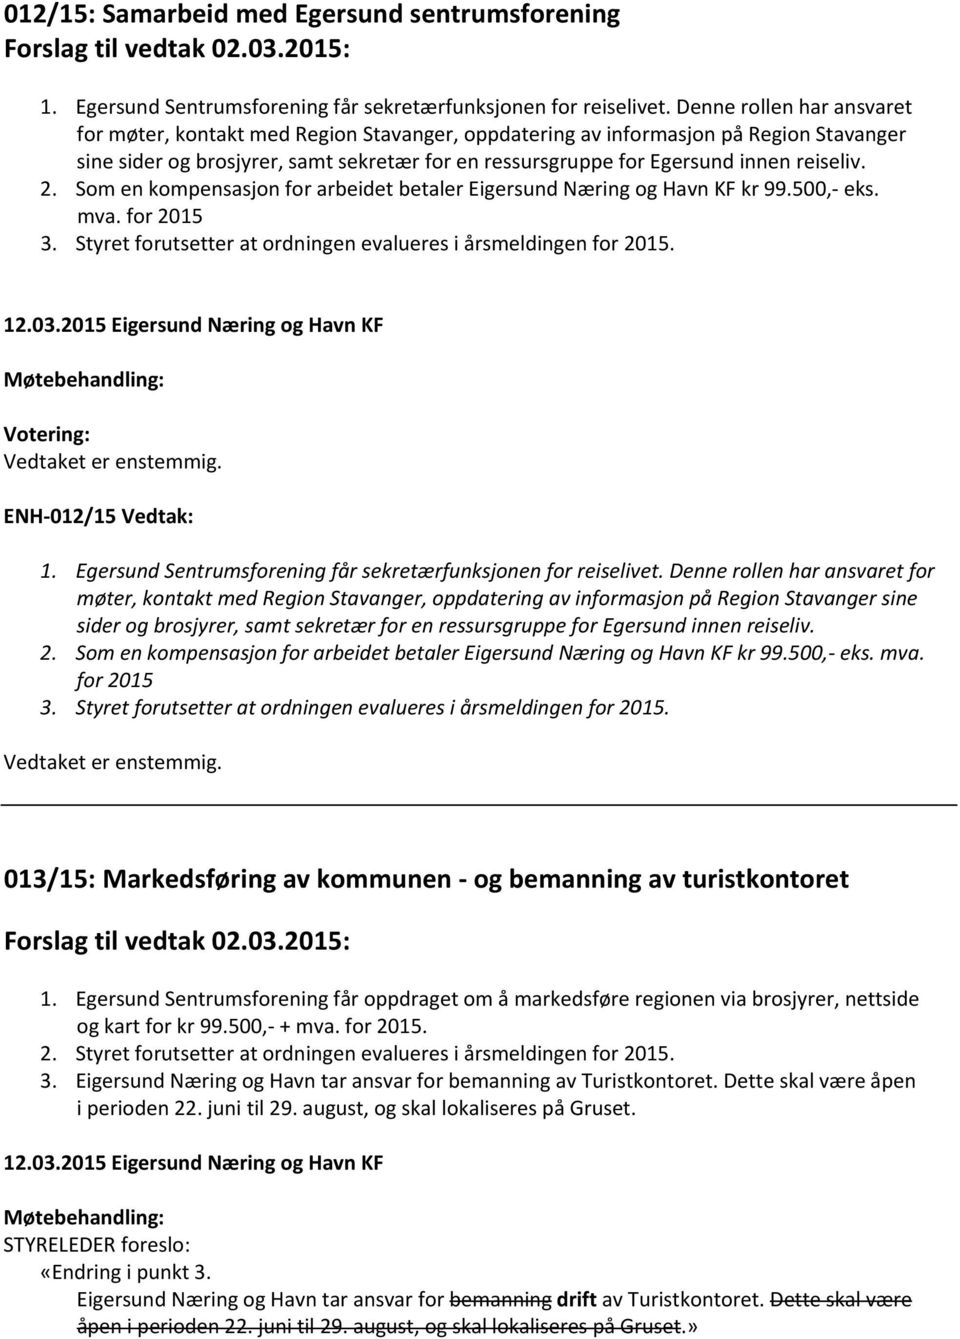 reiseliv. 2. Som en kompensasjon for arbeidet betaler Eigersund Næring og Havn KF kr 99.500, eks. mva. for 2015 3. Styret forutsetter at ordningen evalueres i årsmeldingen for 2015. 12.03.